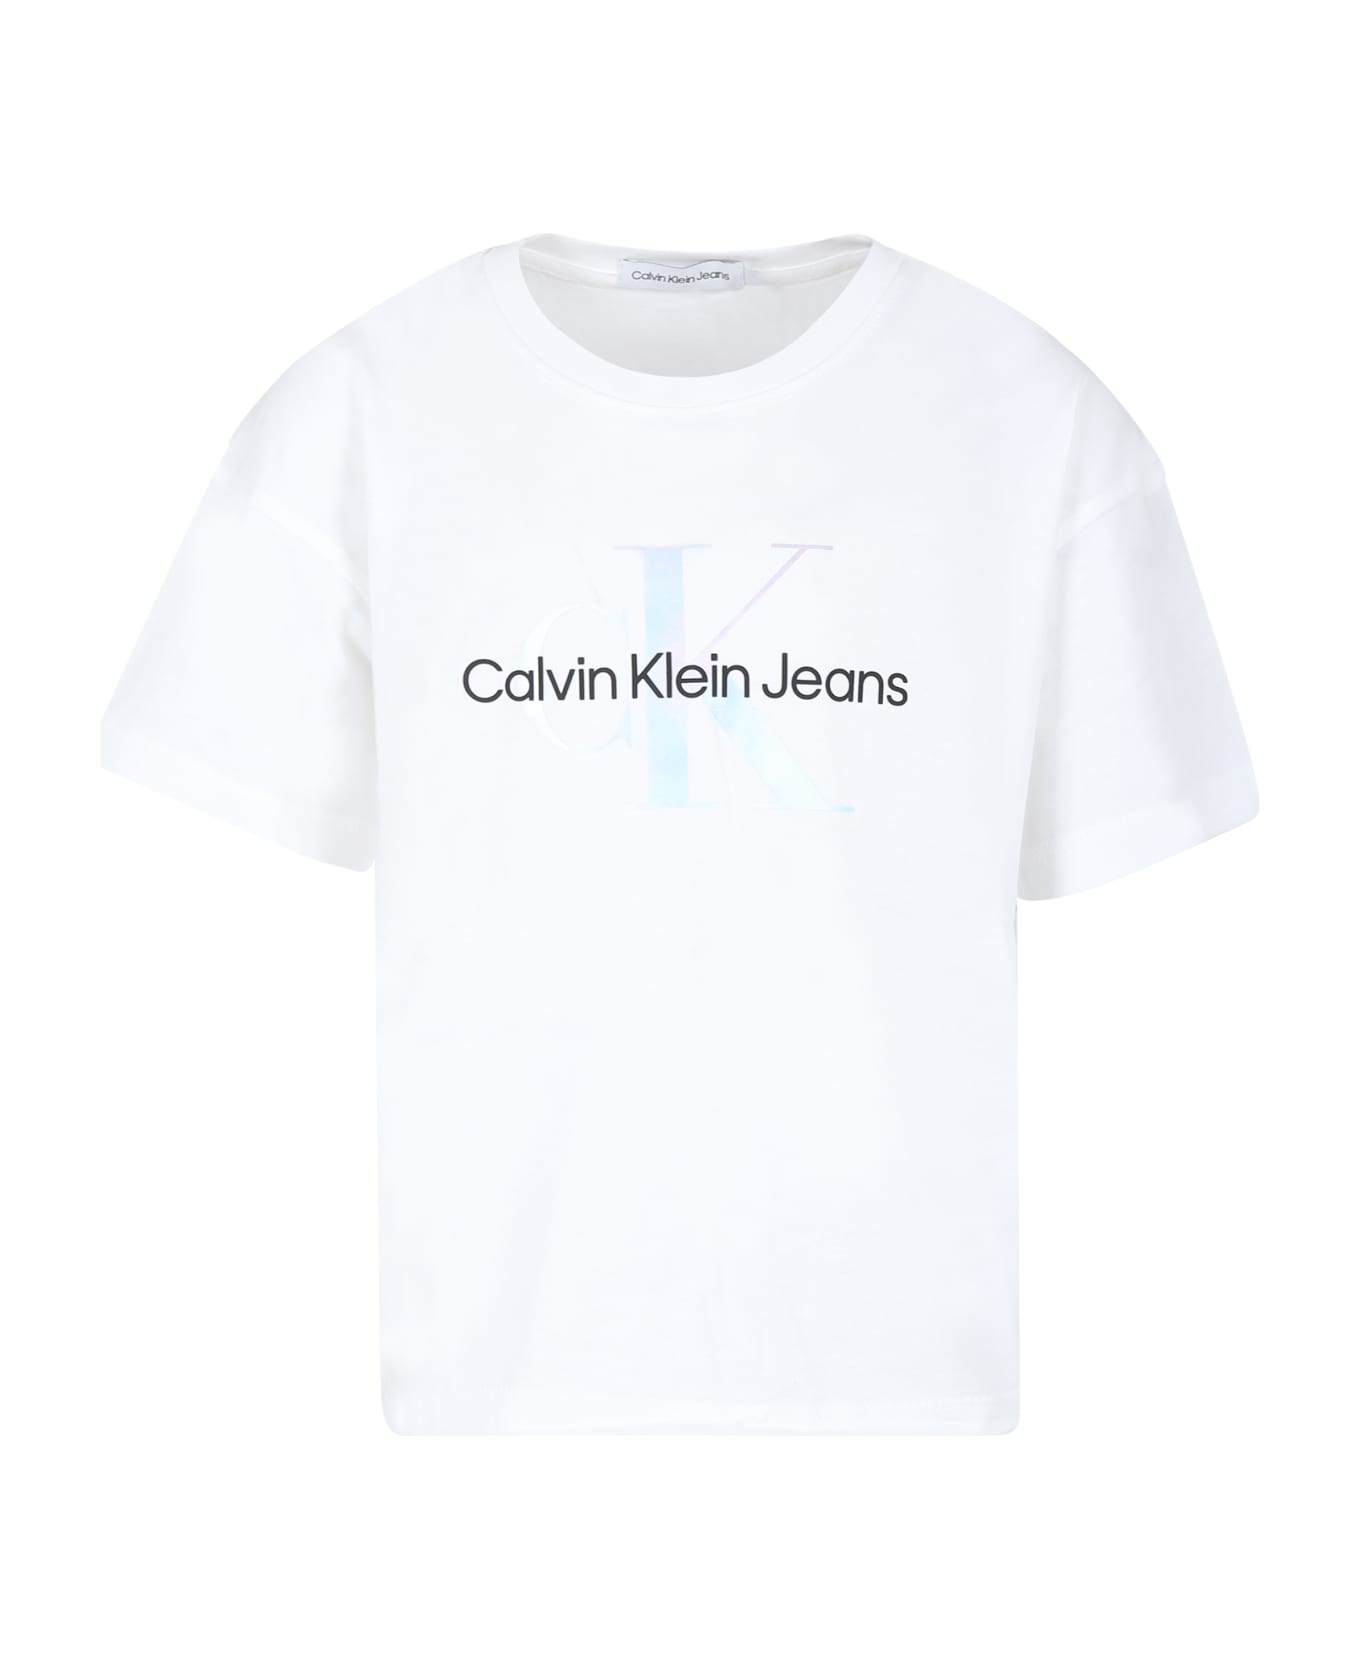 Calvin Klein White T-shirt For Girl With Logo - White